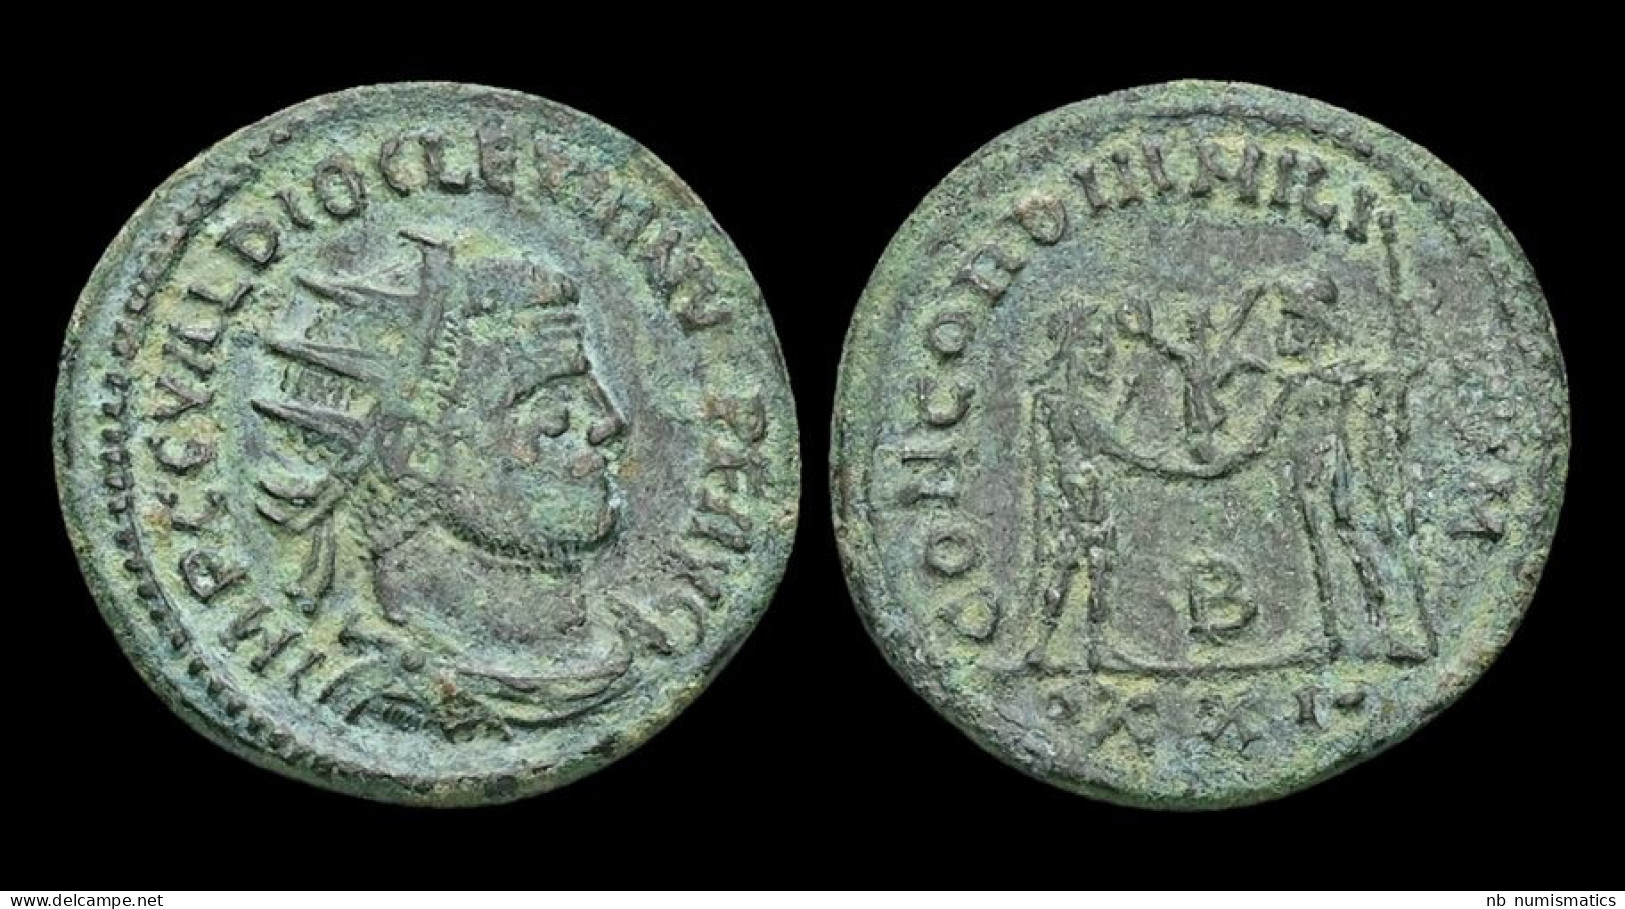 Diocletian AE Antoninianus Diocletian Standing Right - La Tetrarchía Y Constantino I El Magno (284 / 307)